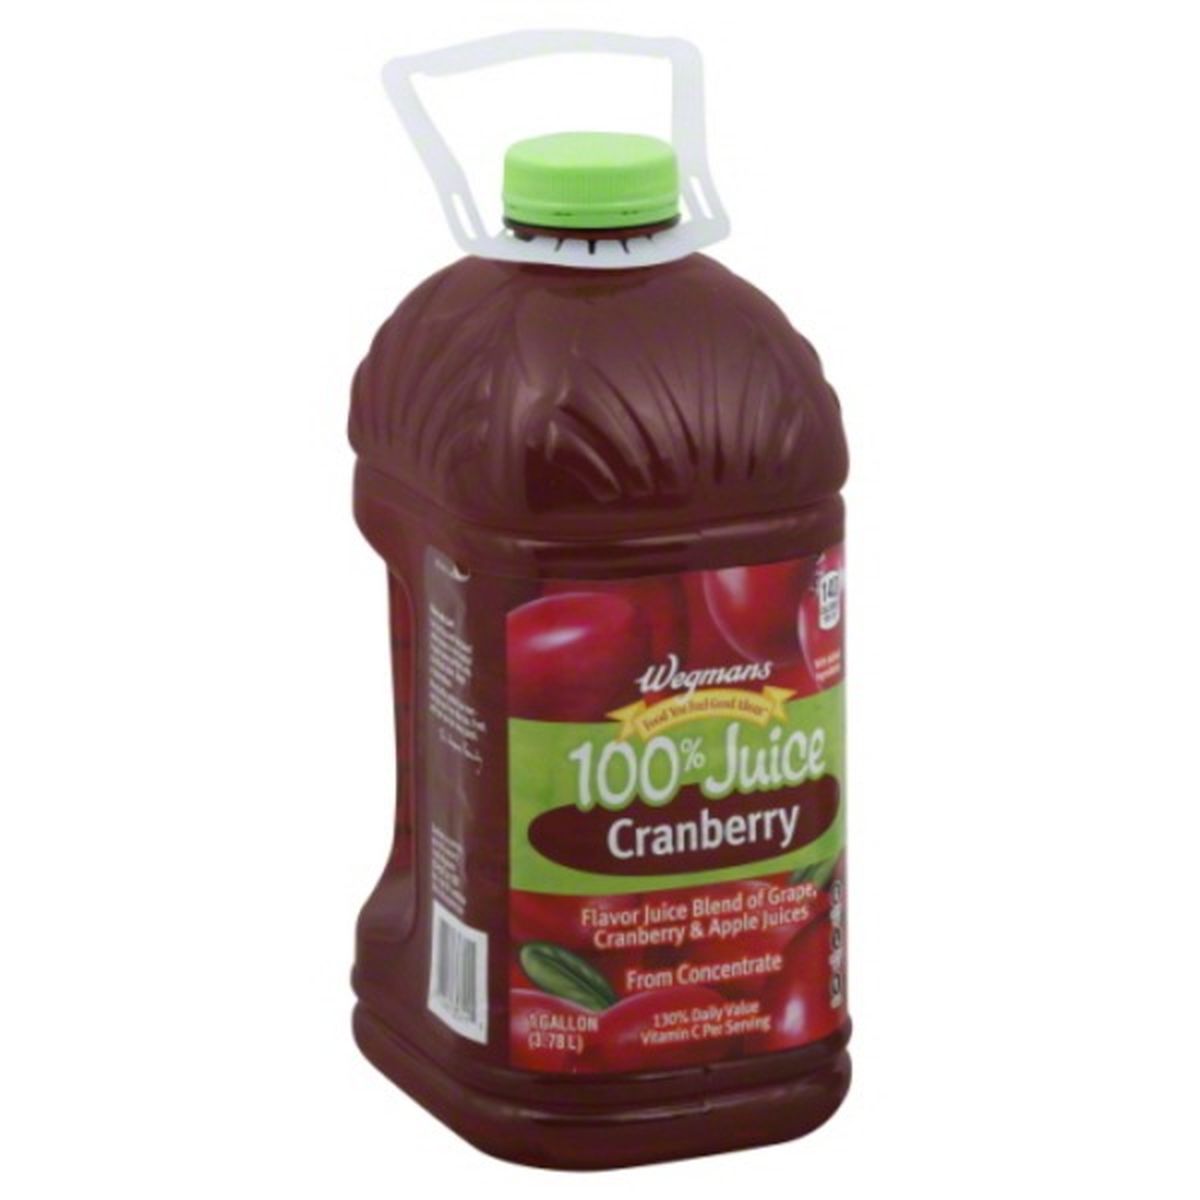 Calories in Wegmans 100% Juice, Cranberry